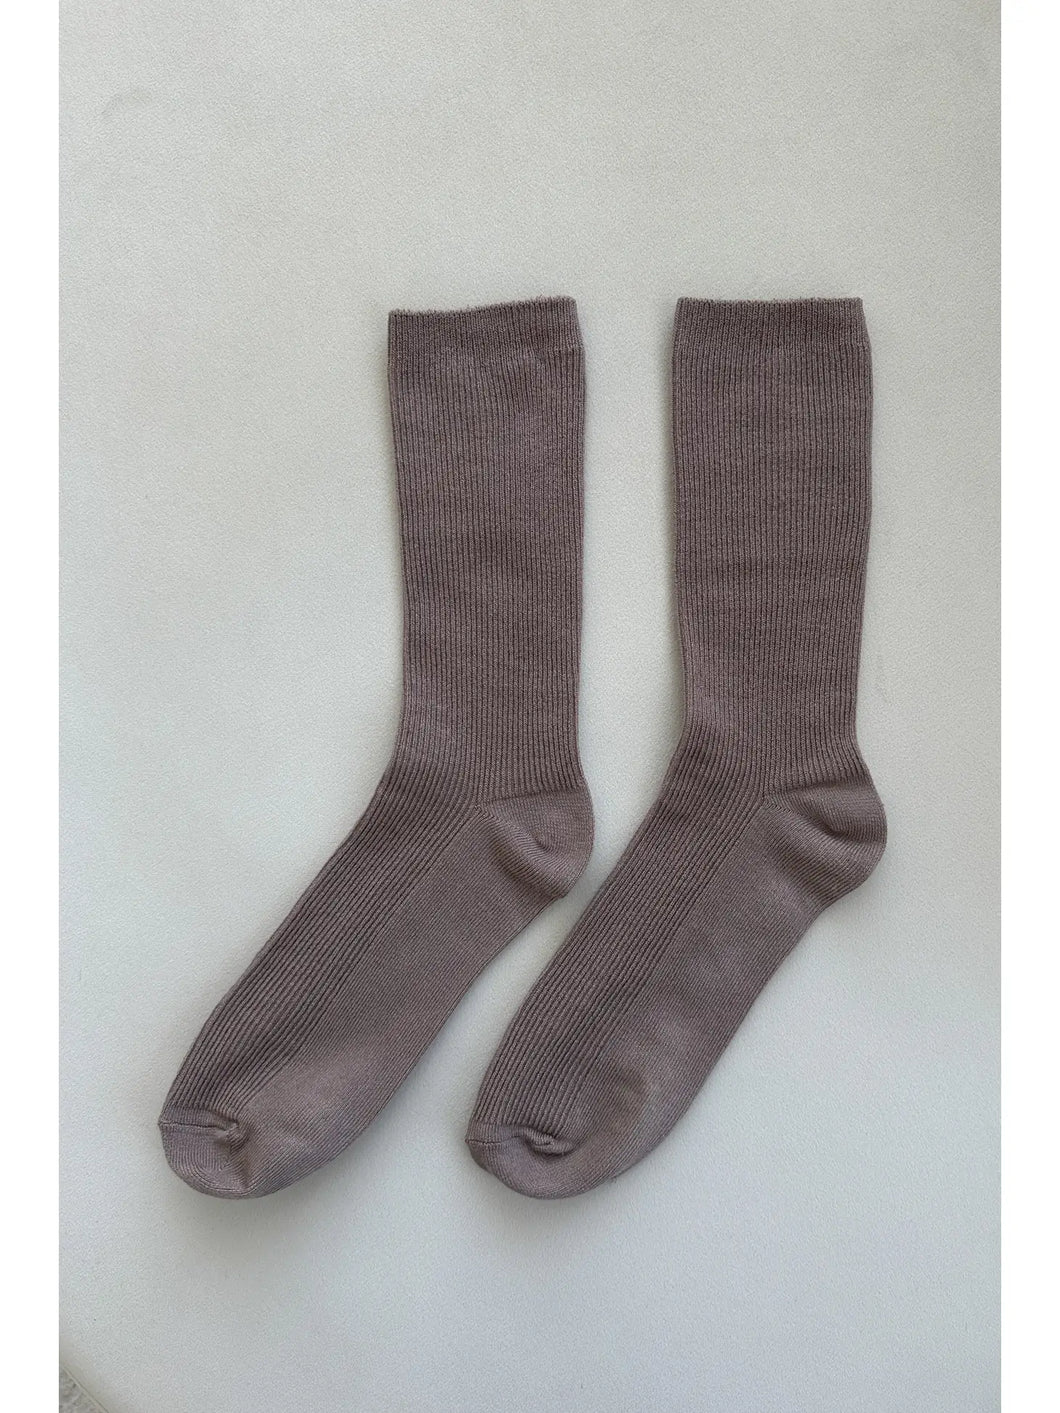 Trouser Socks - TRENCH COAT